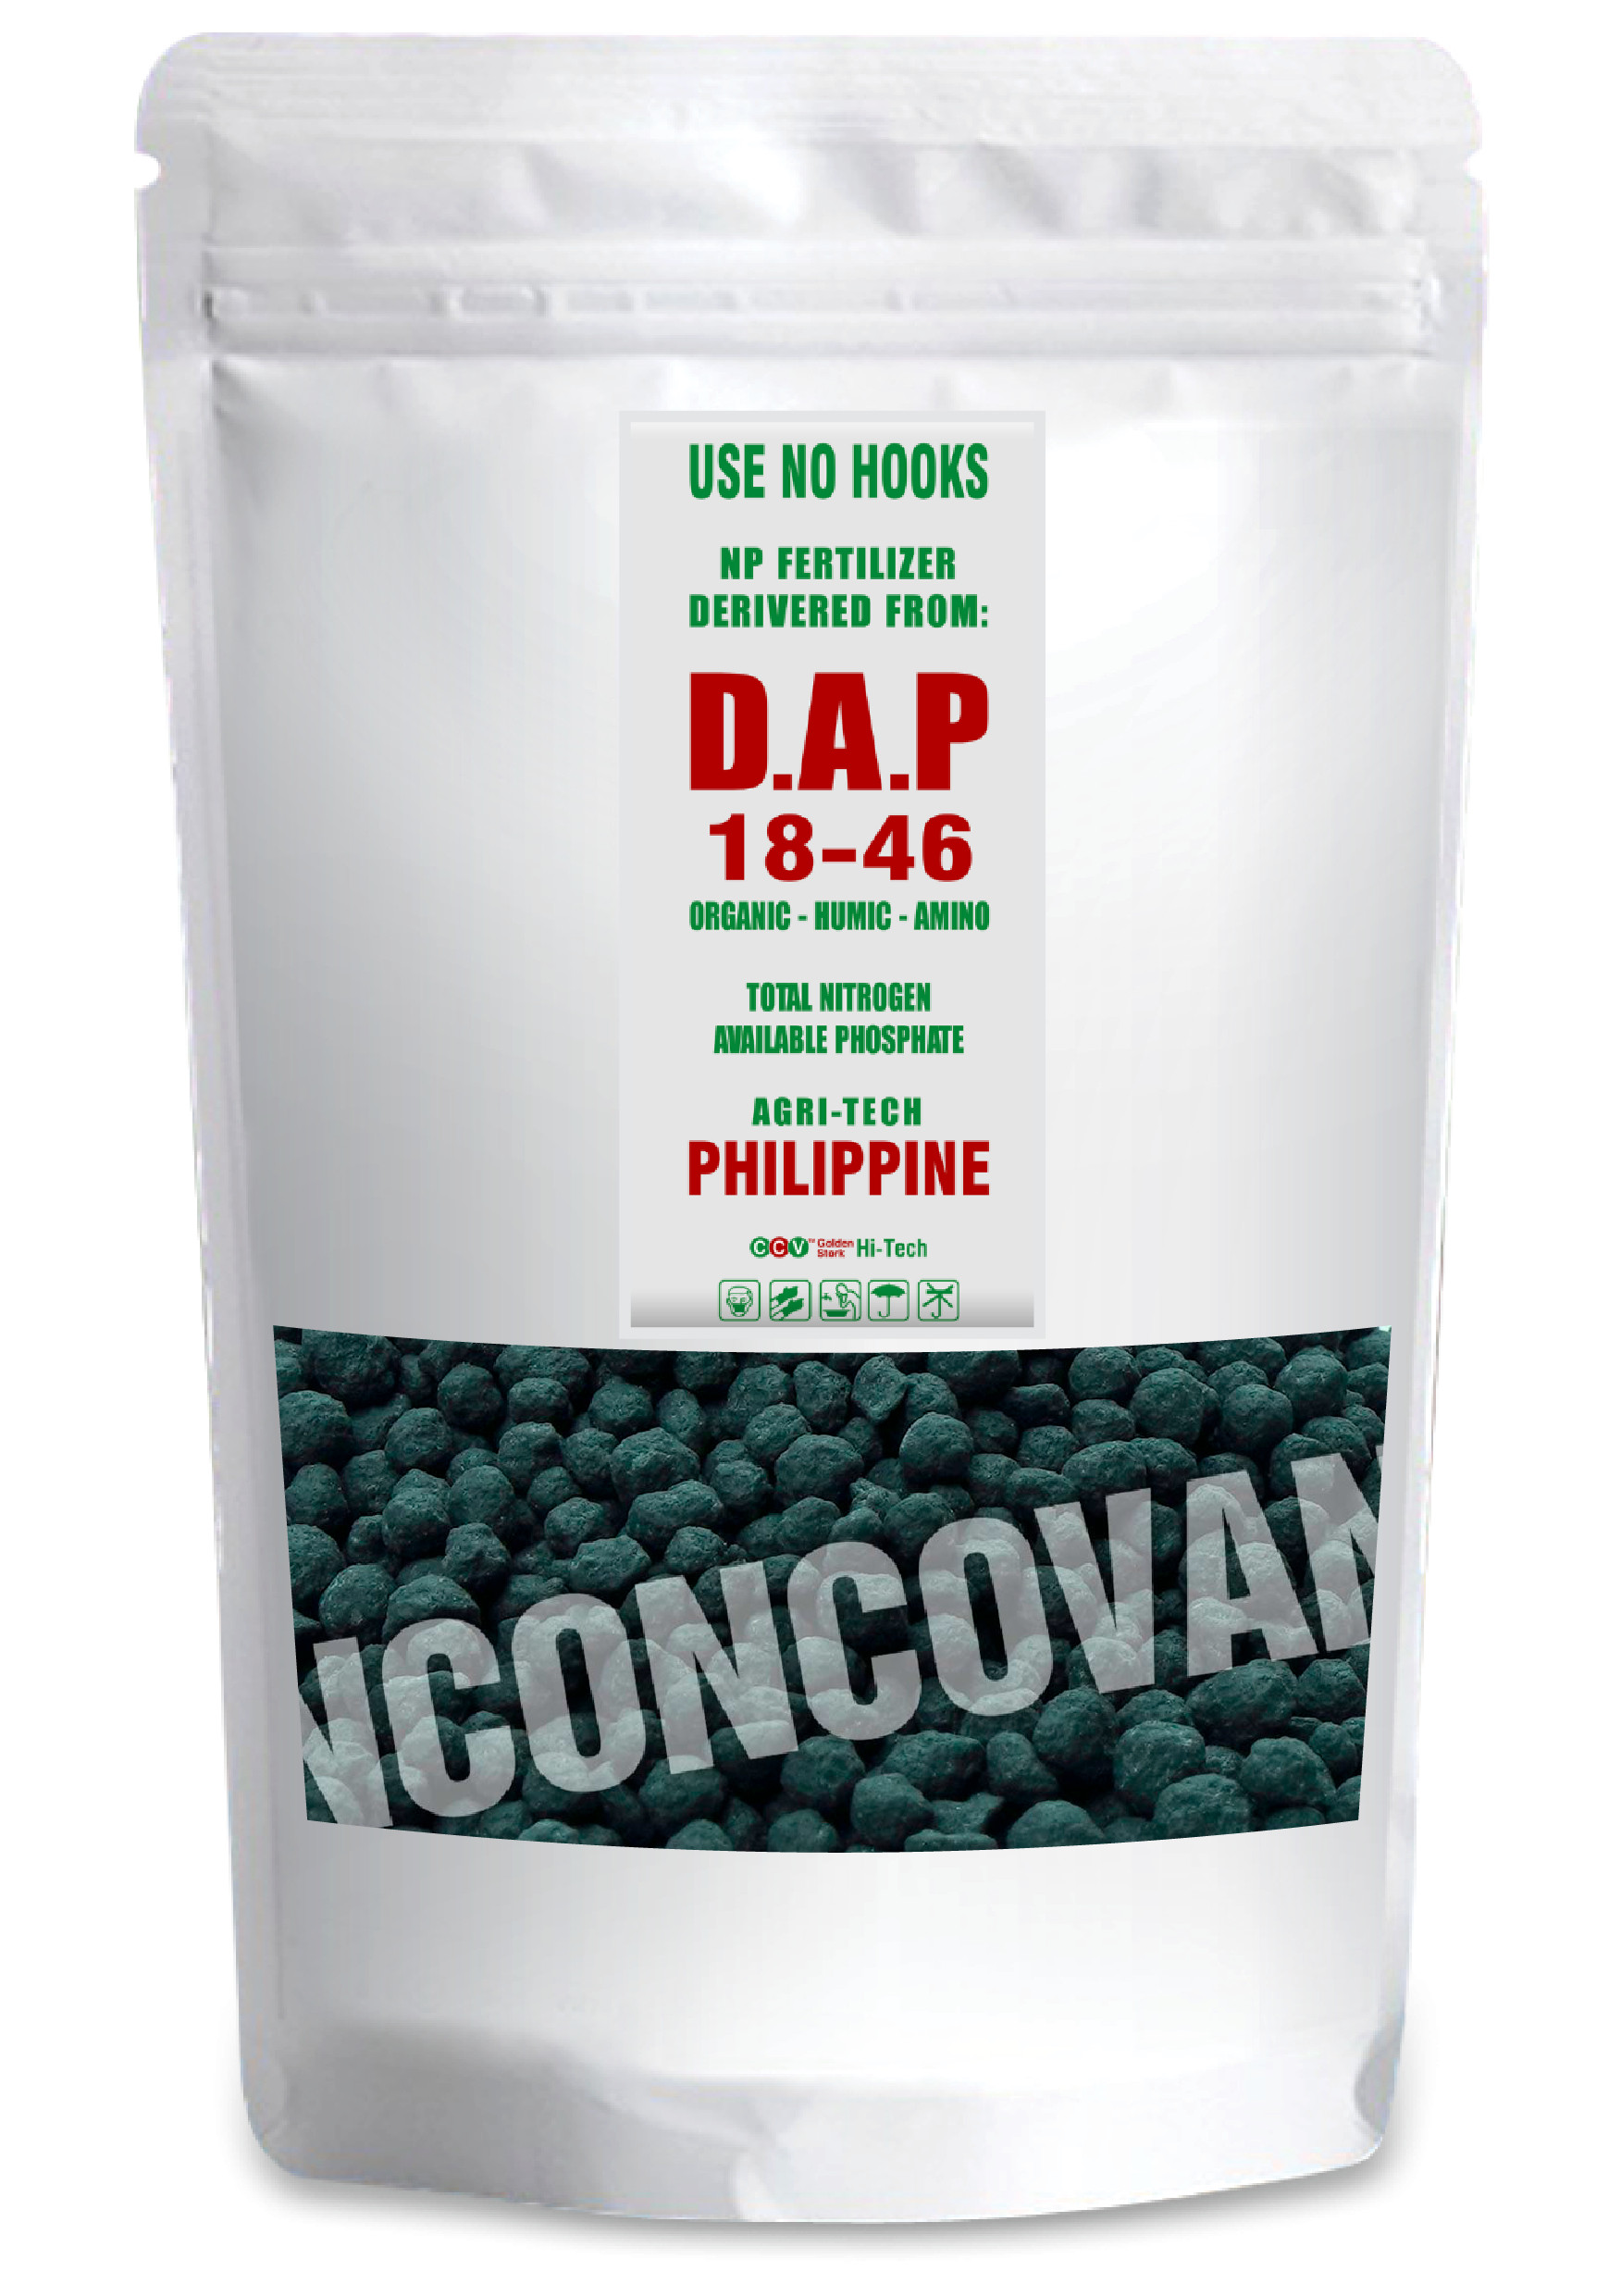 Phân bón nhập khẩu : DAP organic-humic-amino 18-46 philippine